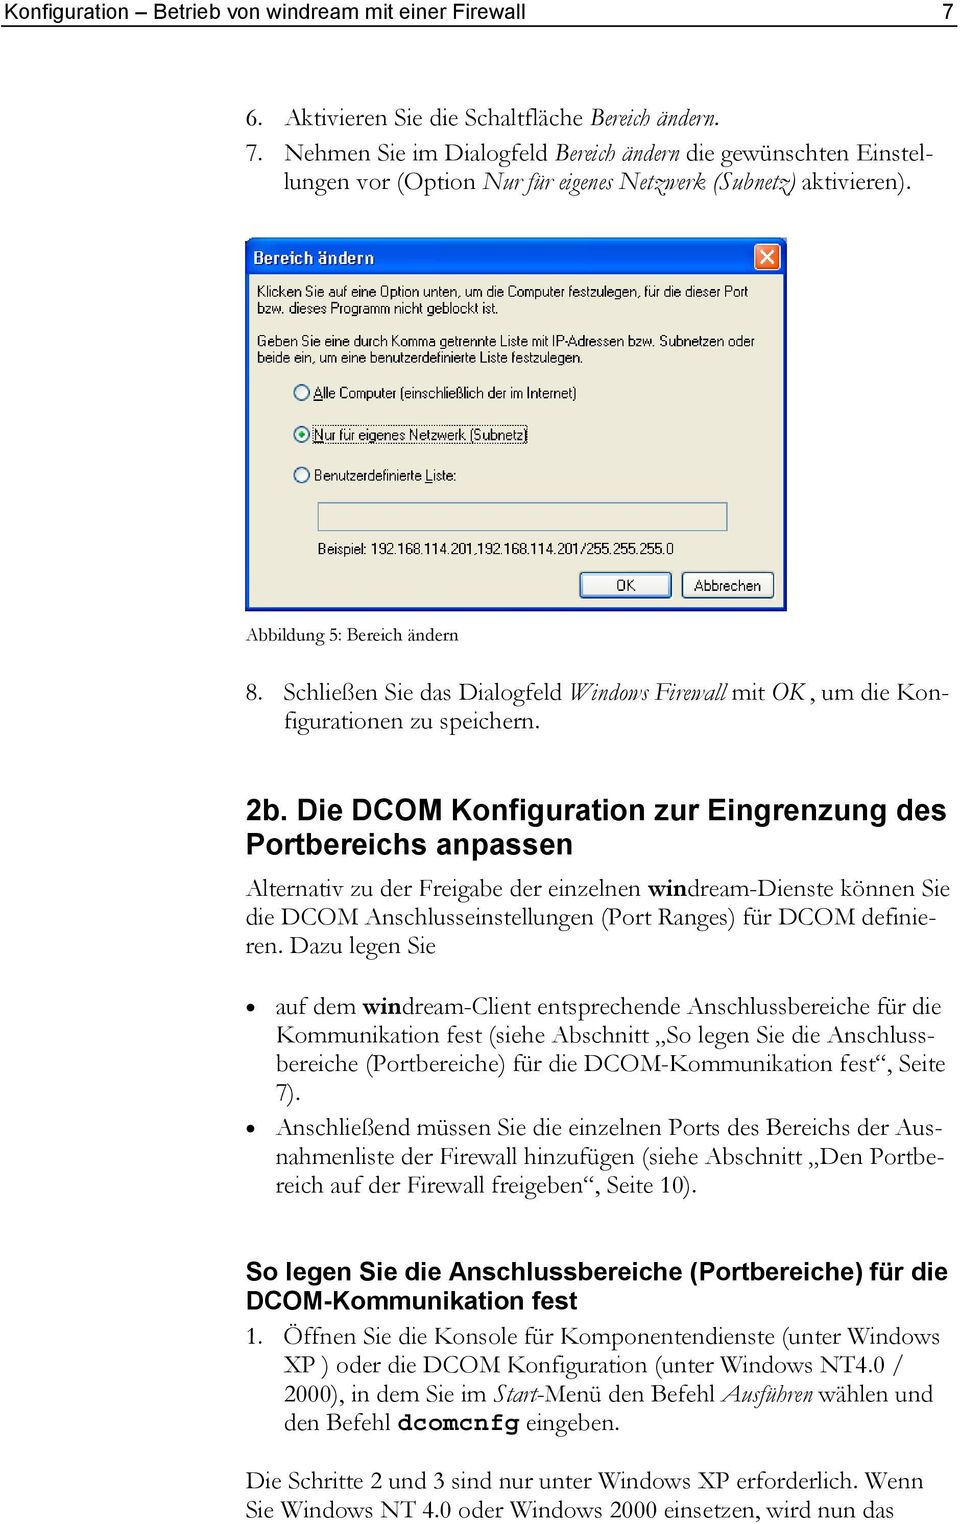 Die DCOM Konfiguration zur Eingrenzung des Portbereichs anpassen Alternativ zu der Freigabe der einzelnen windream-dienste können Sie die DCOM Anschlusseinstellungen (Port Ranges) für DCOM definieren.